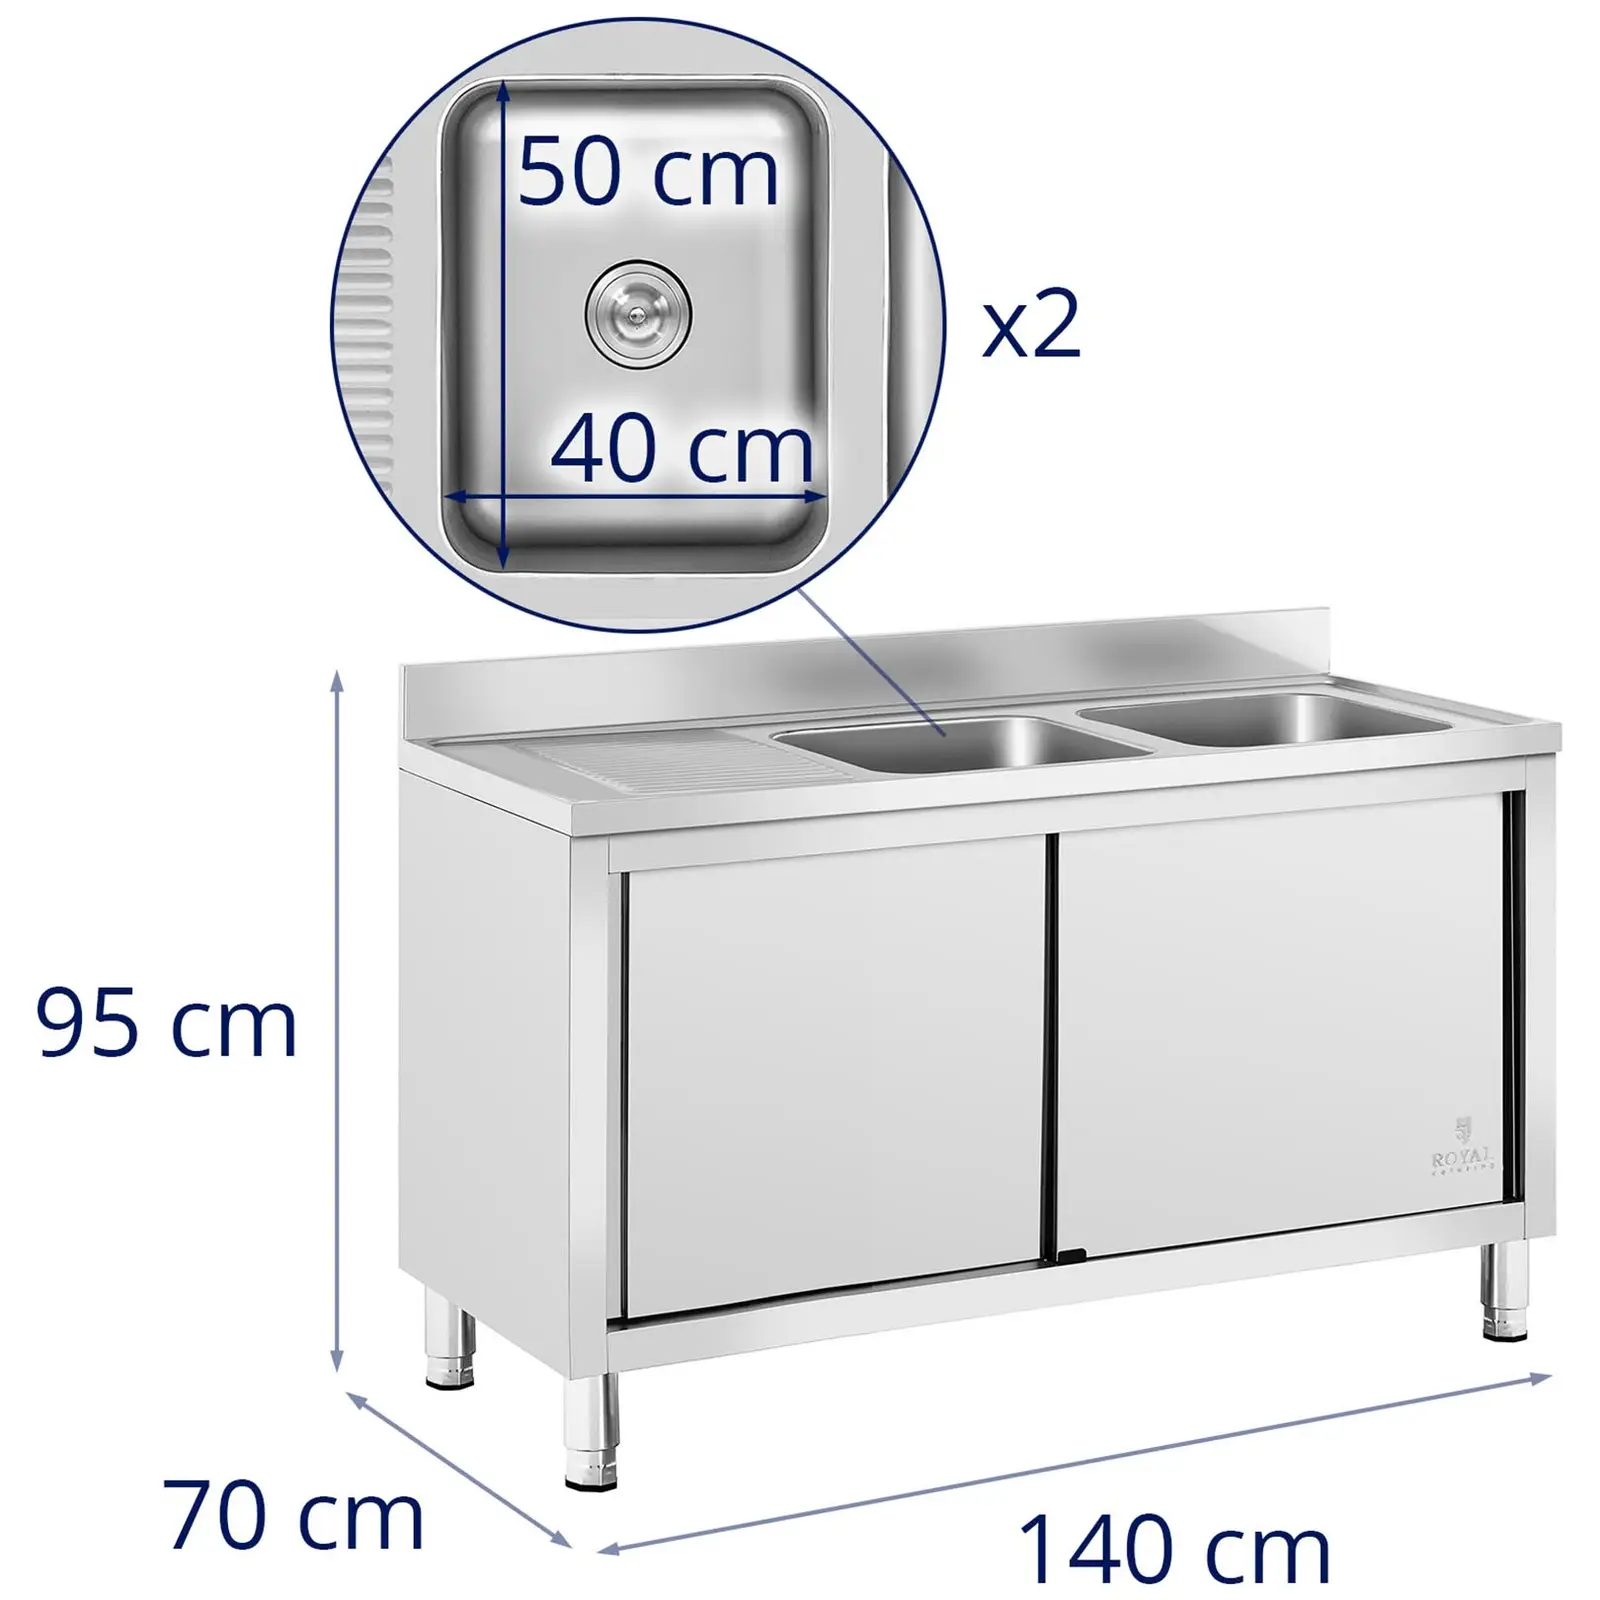 Търговска кухненска мивка - 2 мивки - Royal Catering -  - 500 x 400 x 300 mm